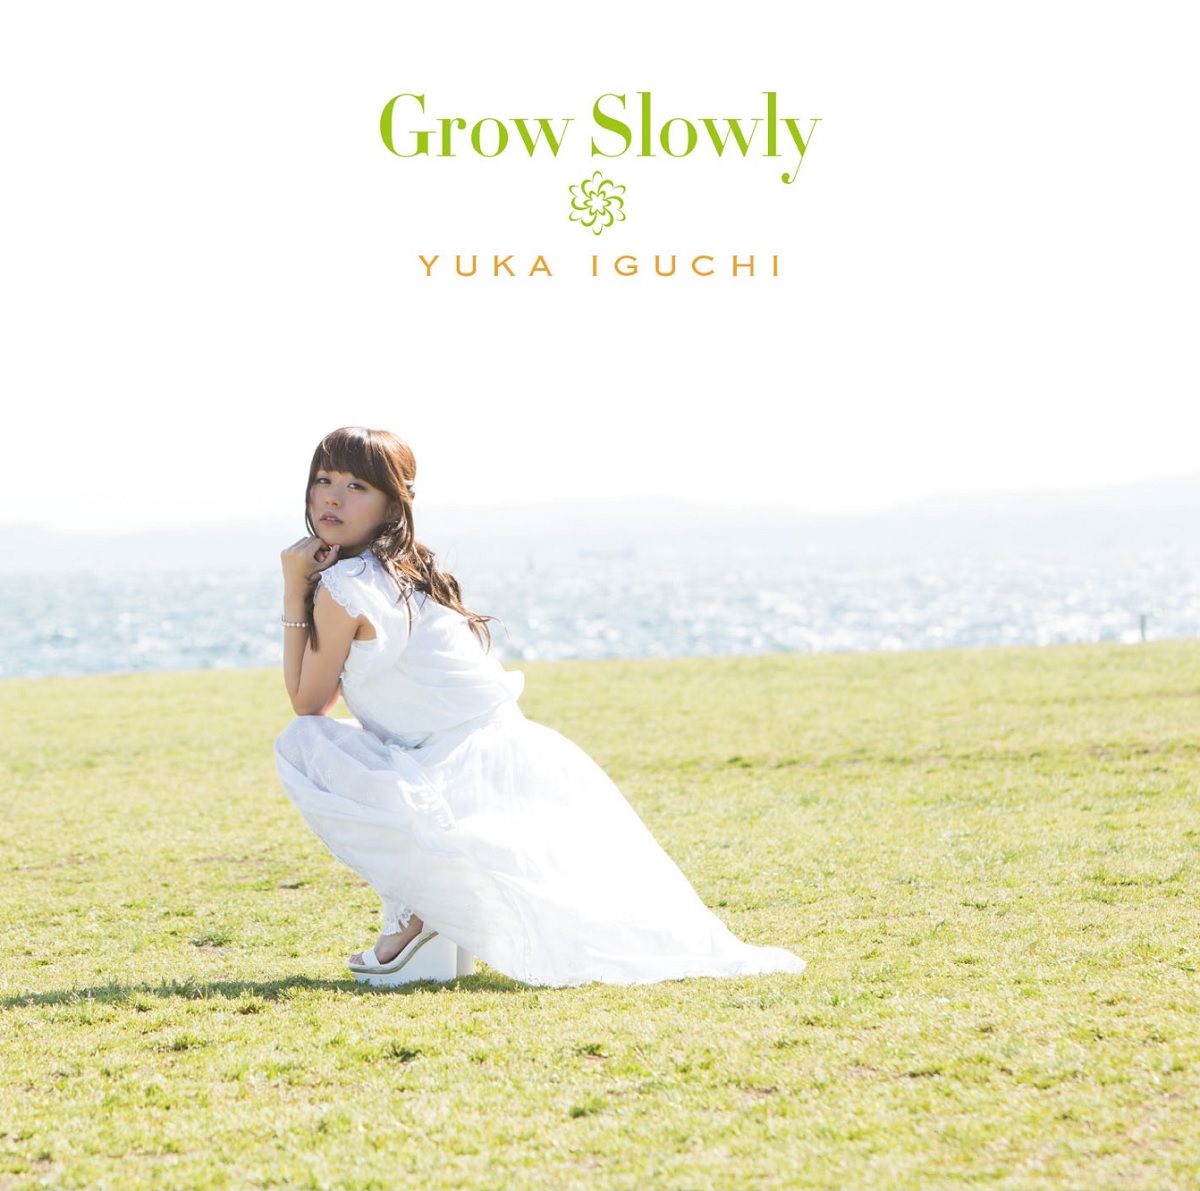 『井口裕香 - Grow Slowly』収録の『Grow Slowly』ジャケット